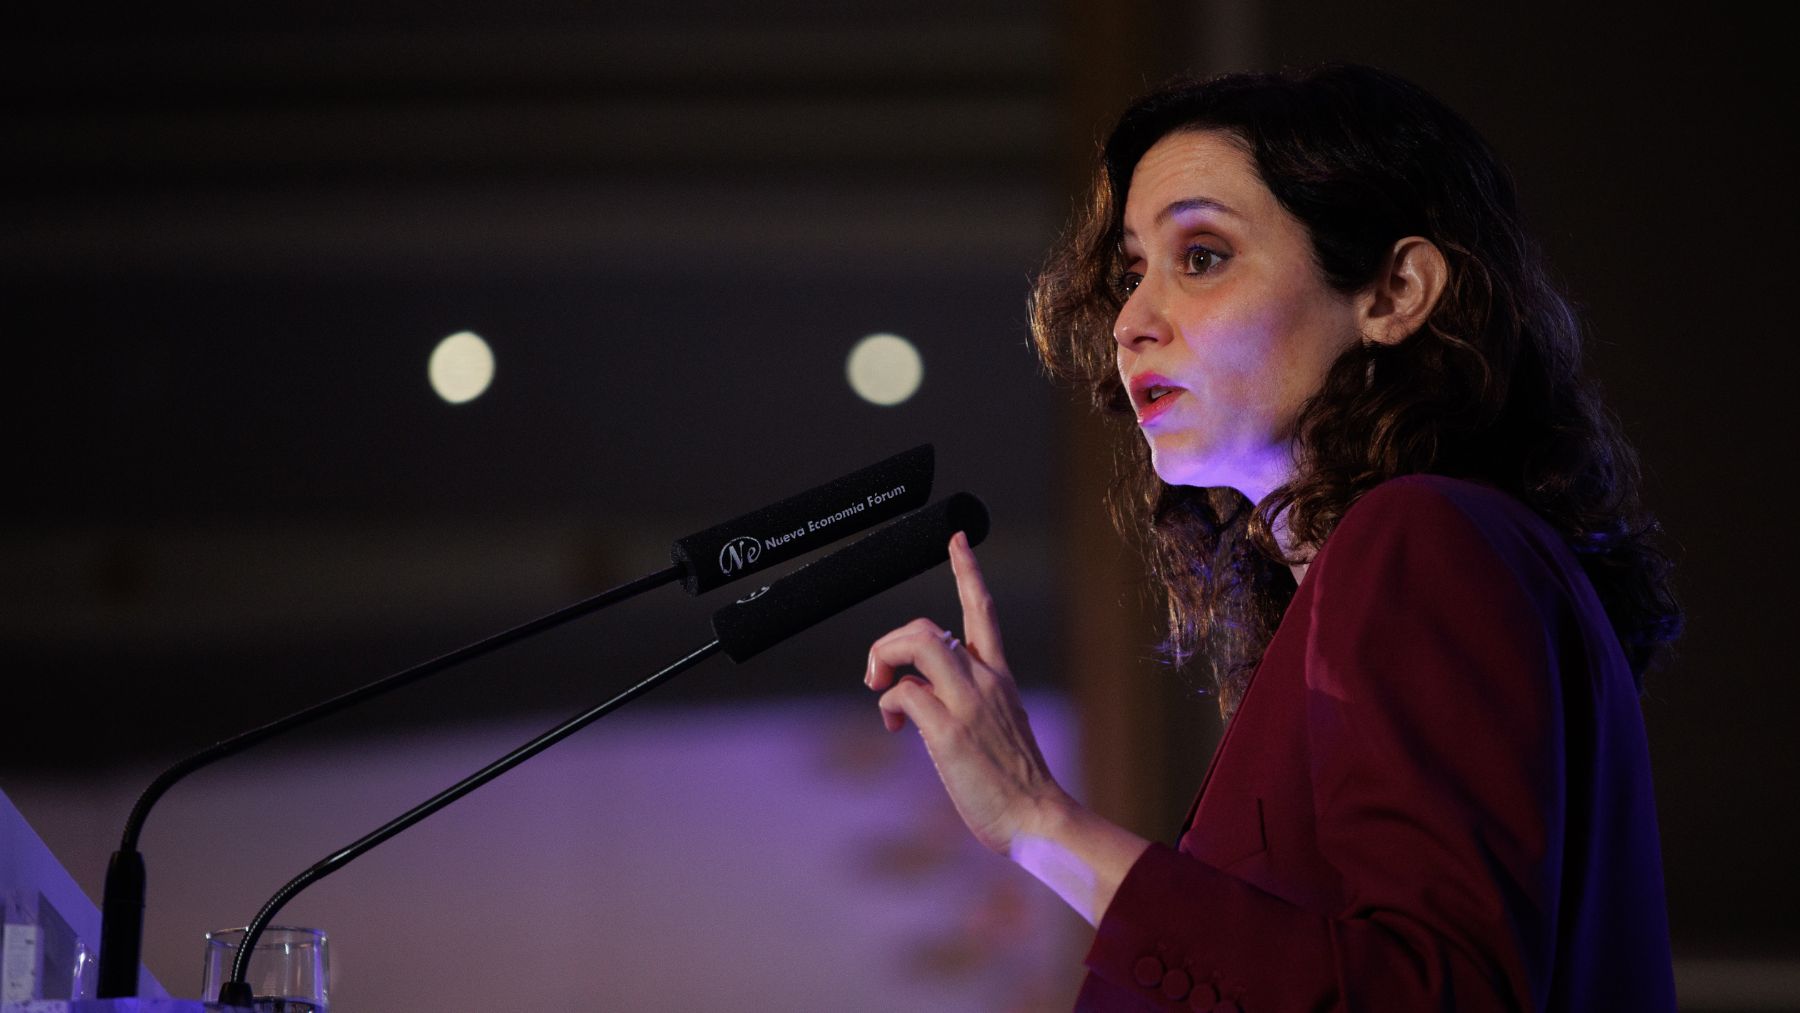 Isabel Díaz Ayuso, presidenta de la Comunidad de Madrid. (Foto: EP)